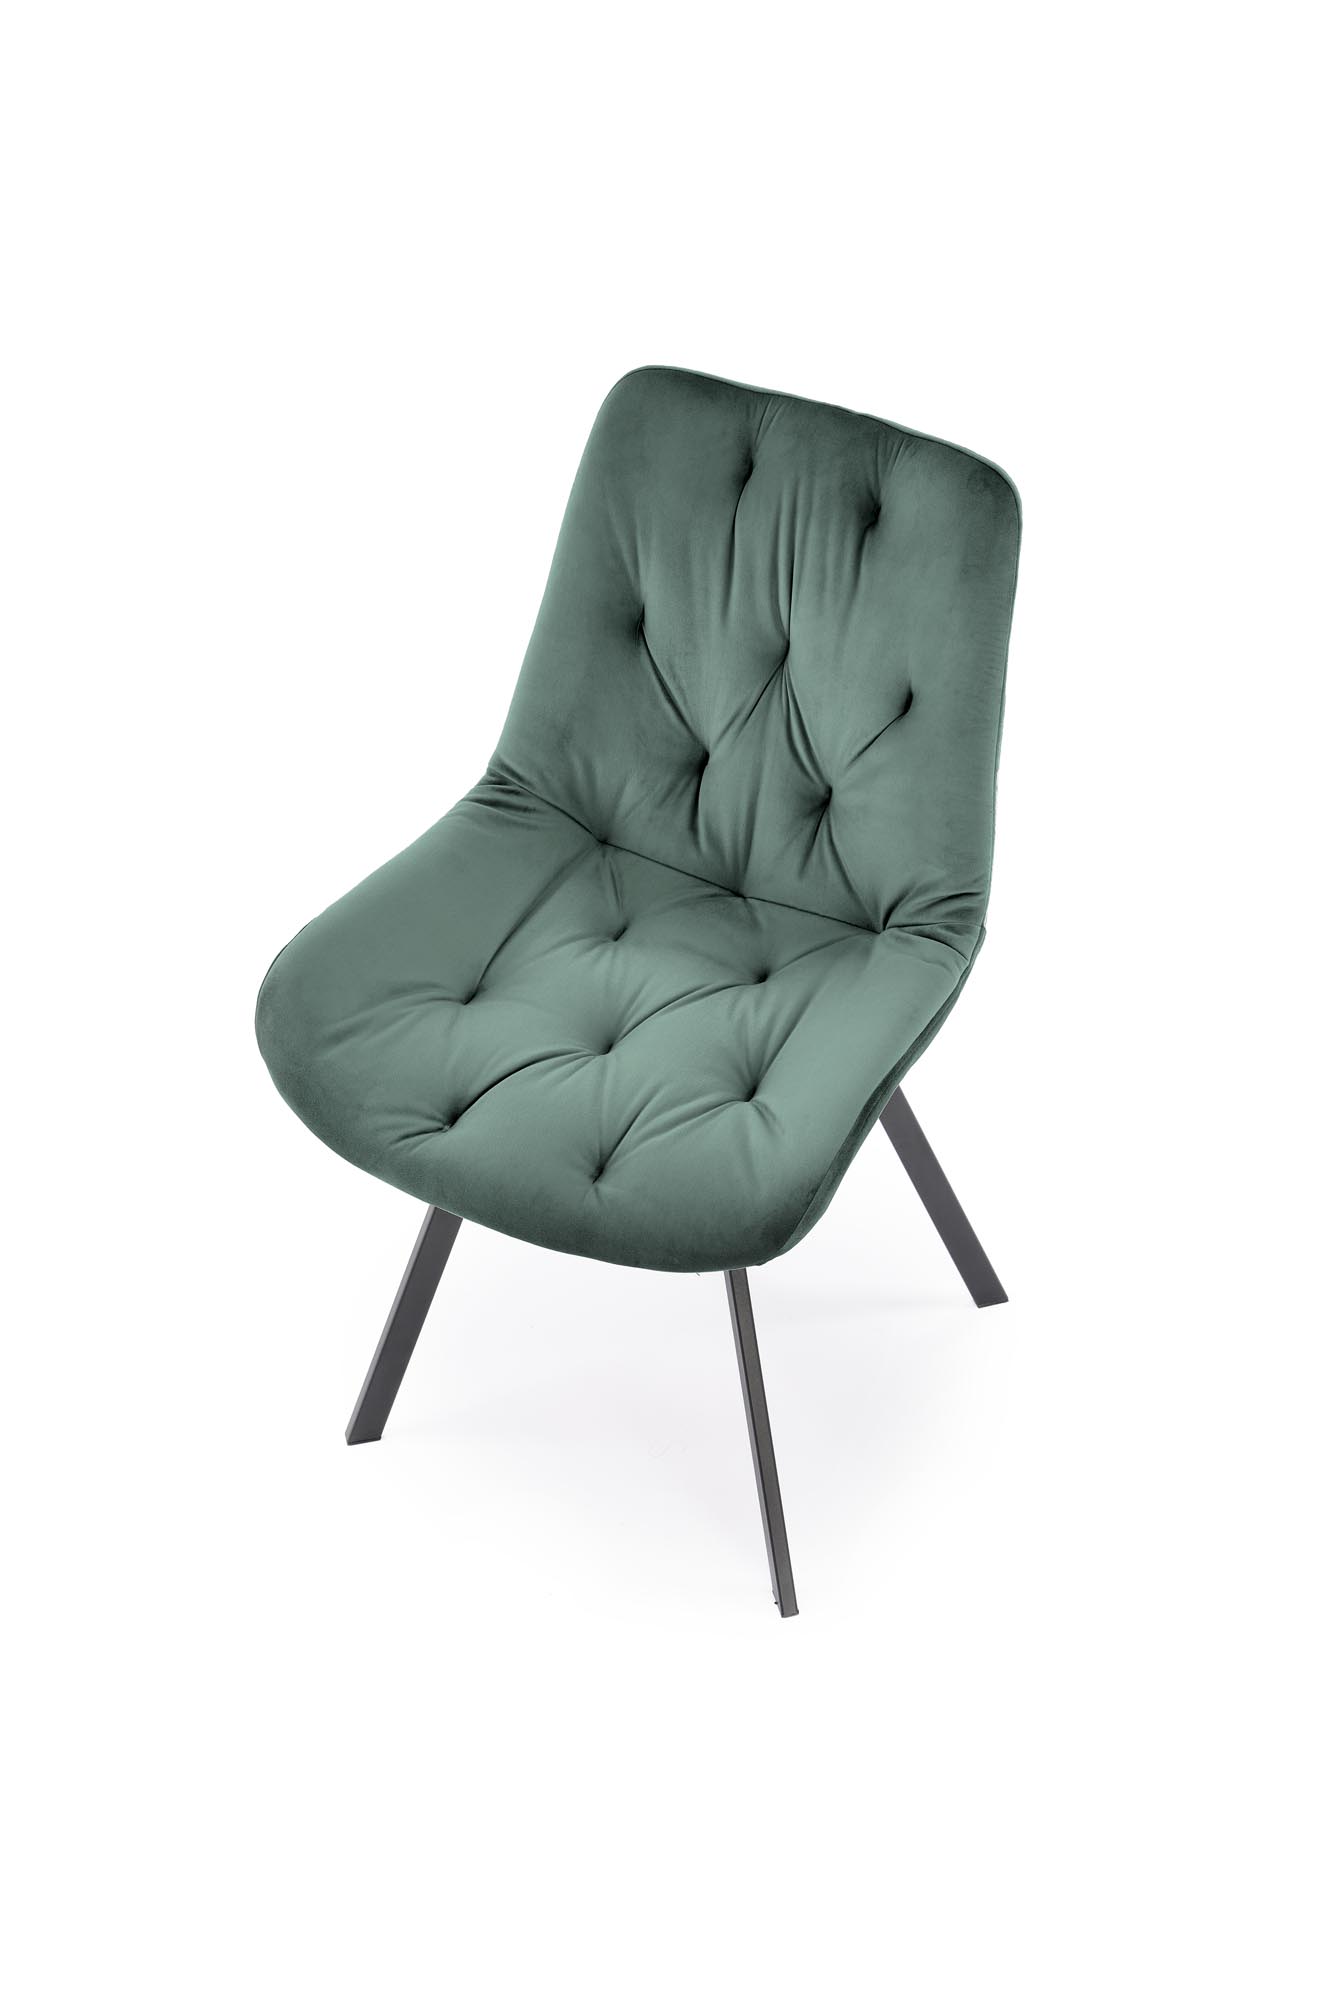 K519 Židle tmavý Zelený Židle čalouněné k519 - tmavý Zelený